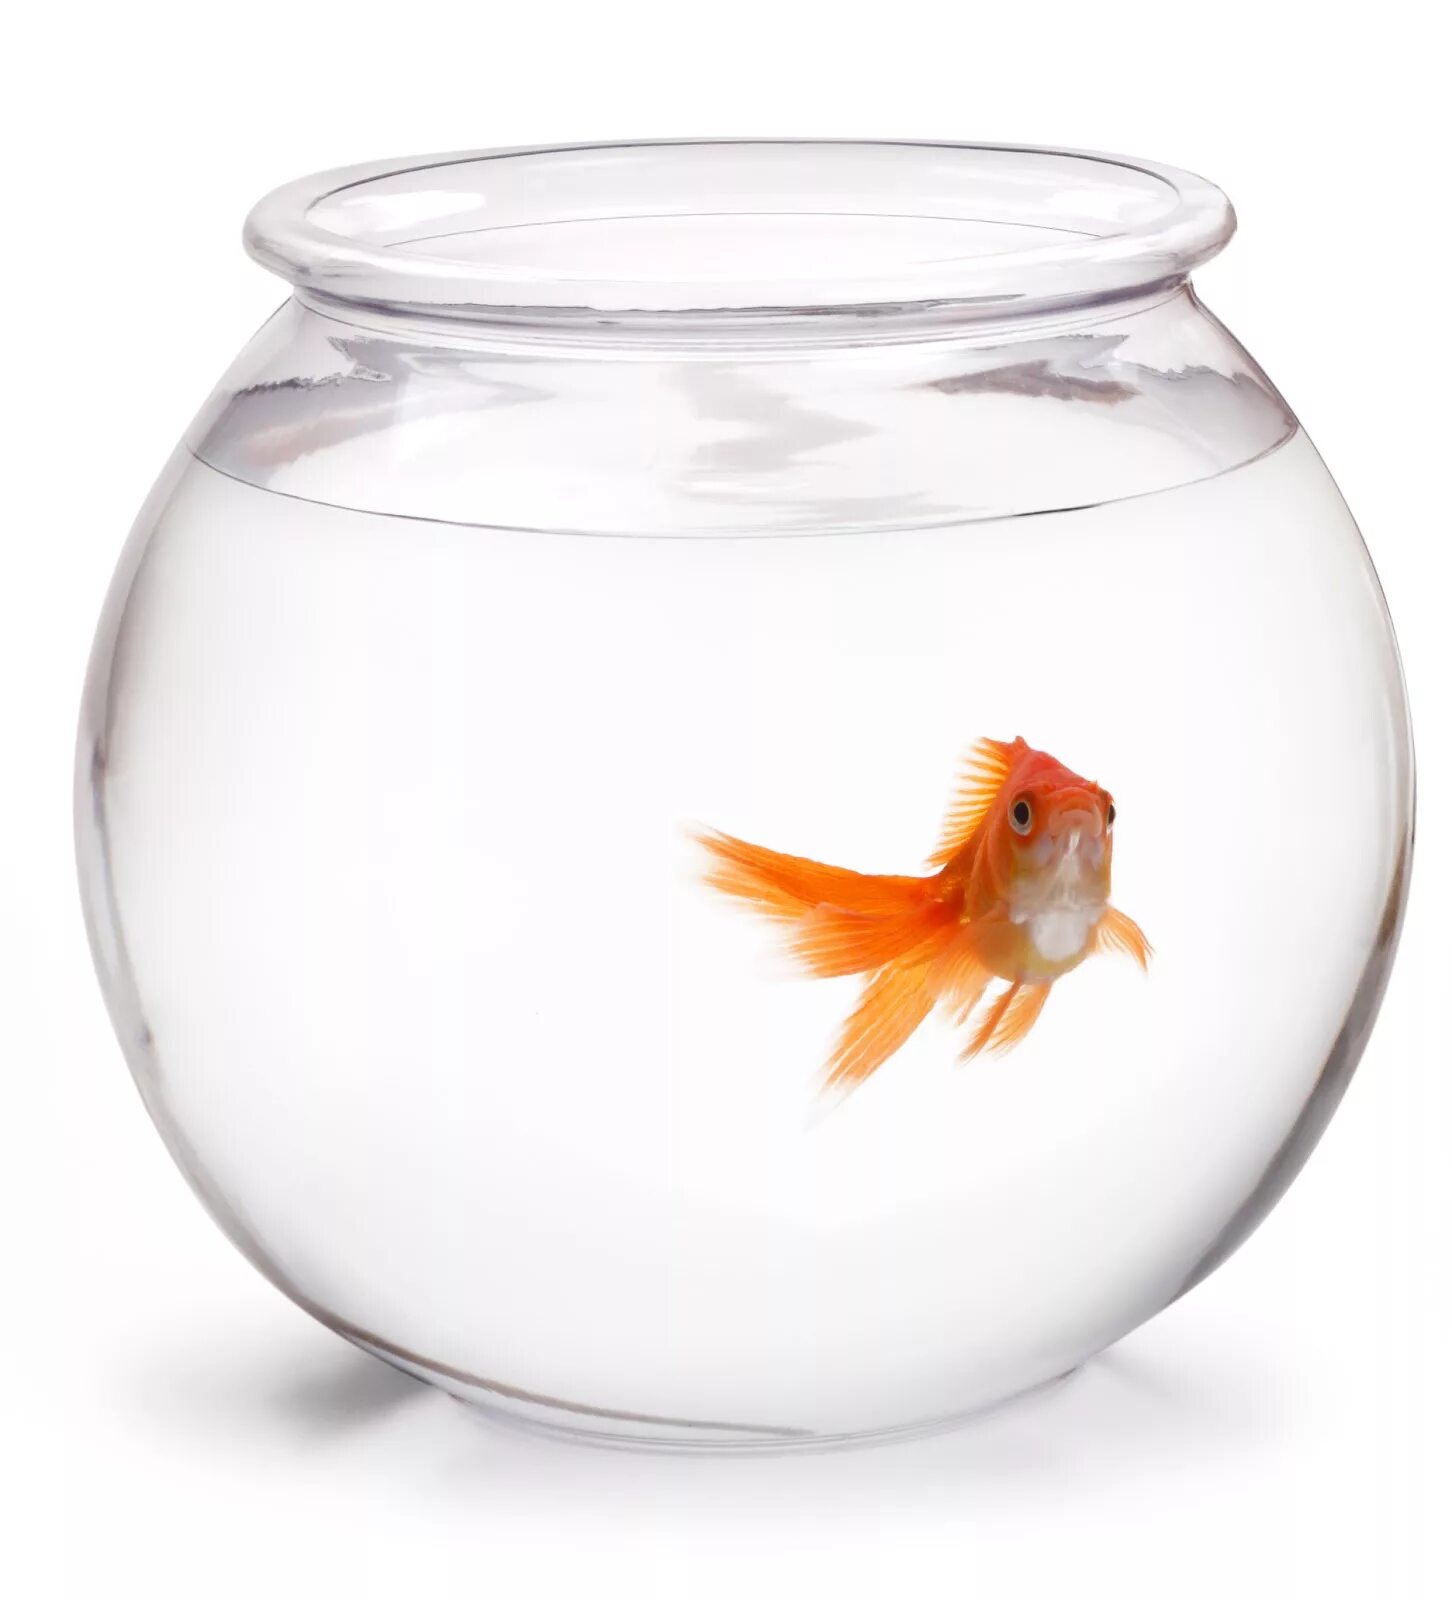 Аквариум Gold Fish Bowl 17л оранжевый. Круглый аквариум с рыбками. Золотая рыбка в круглом аквариуме. Одна рыбка в круглом аквариуме. В аквариуме было 36 рыбок